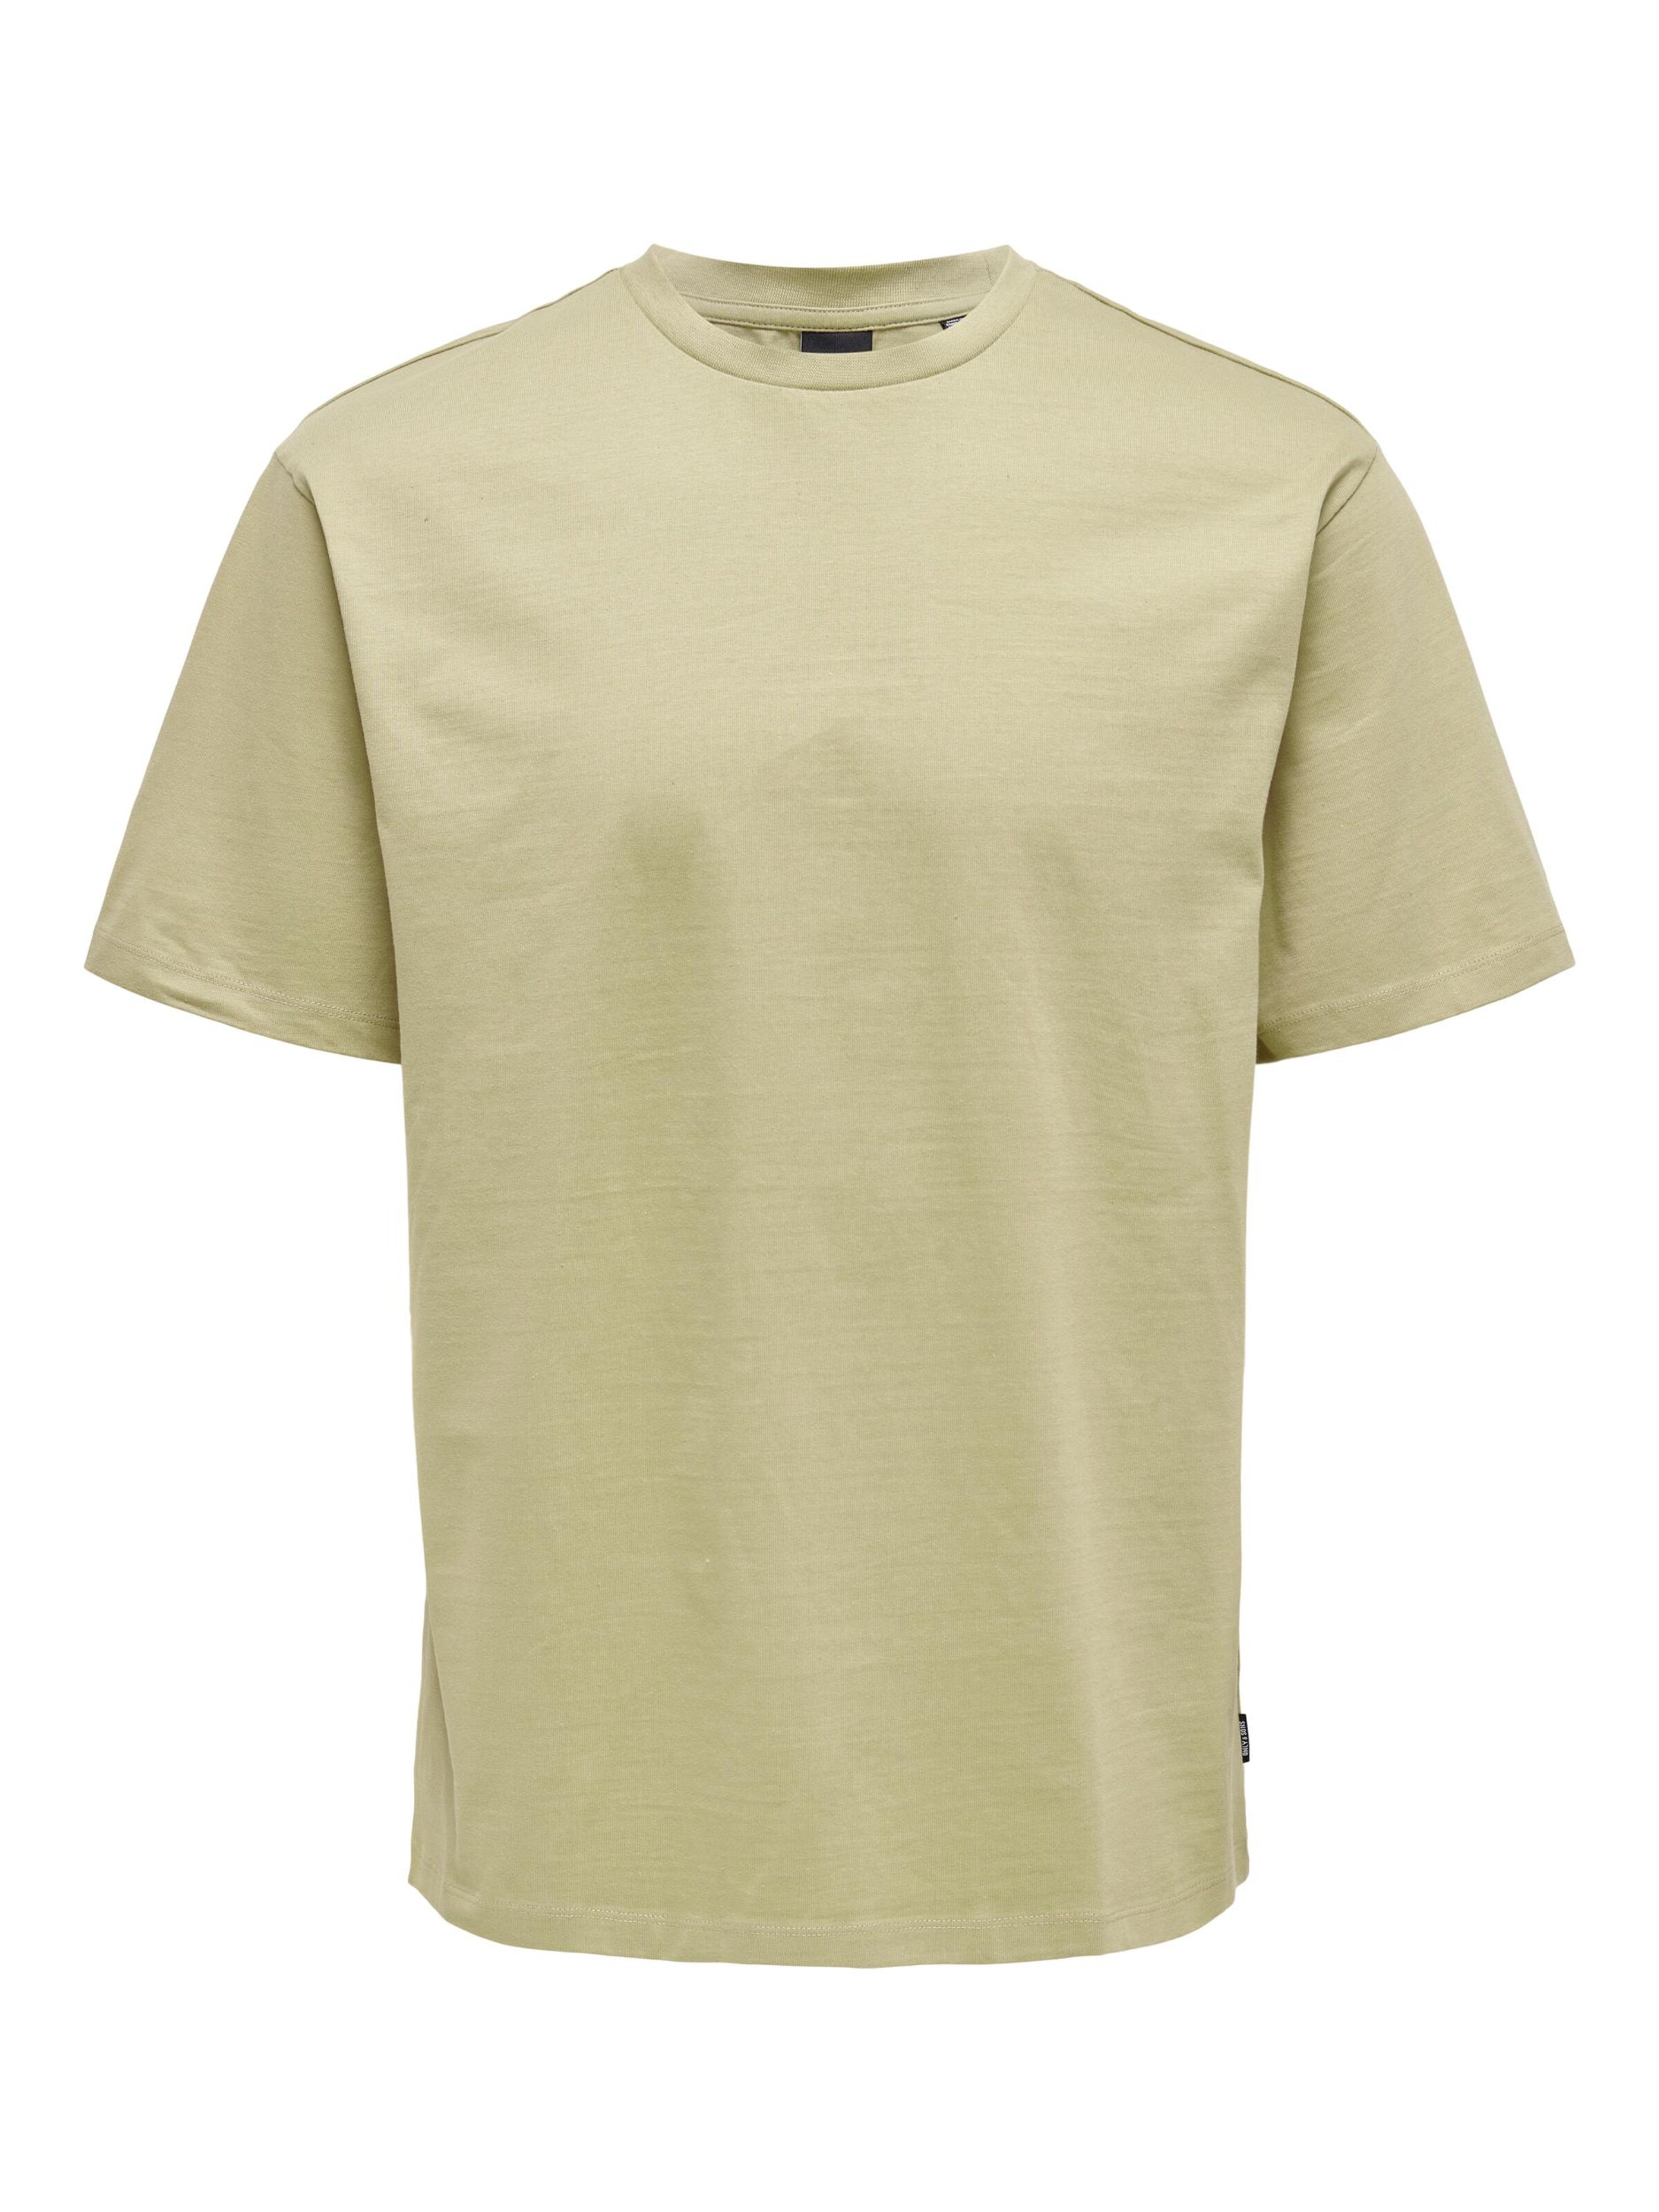 Rabatt 54 % KINDER Hemden & T-Shirts Basisch Gelb Name it T-Shirt 